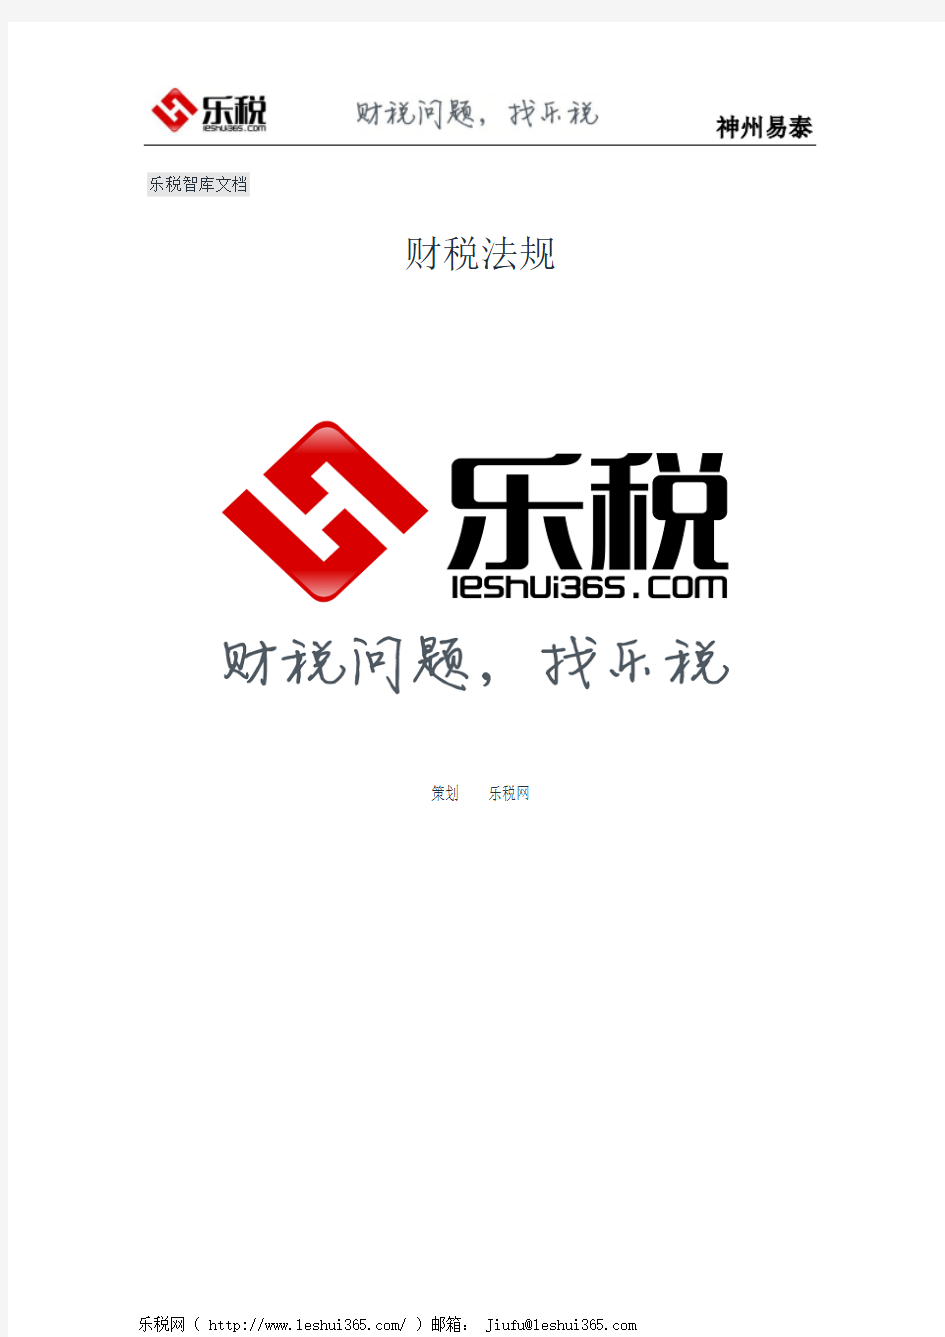 上海市国家税务局 上海市地方税务局关于进一步规范本市税务机关